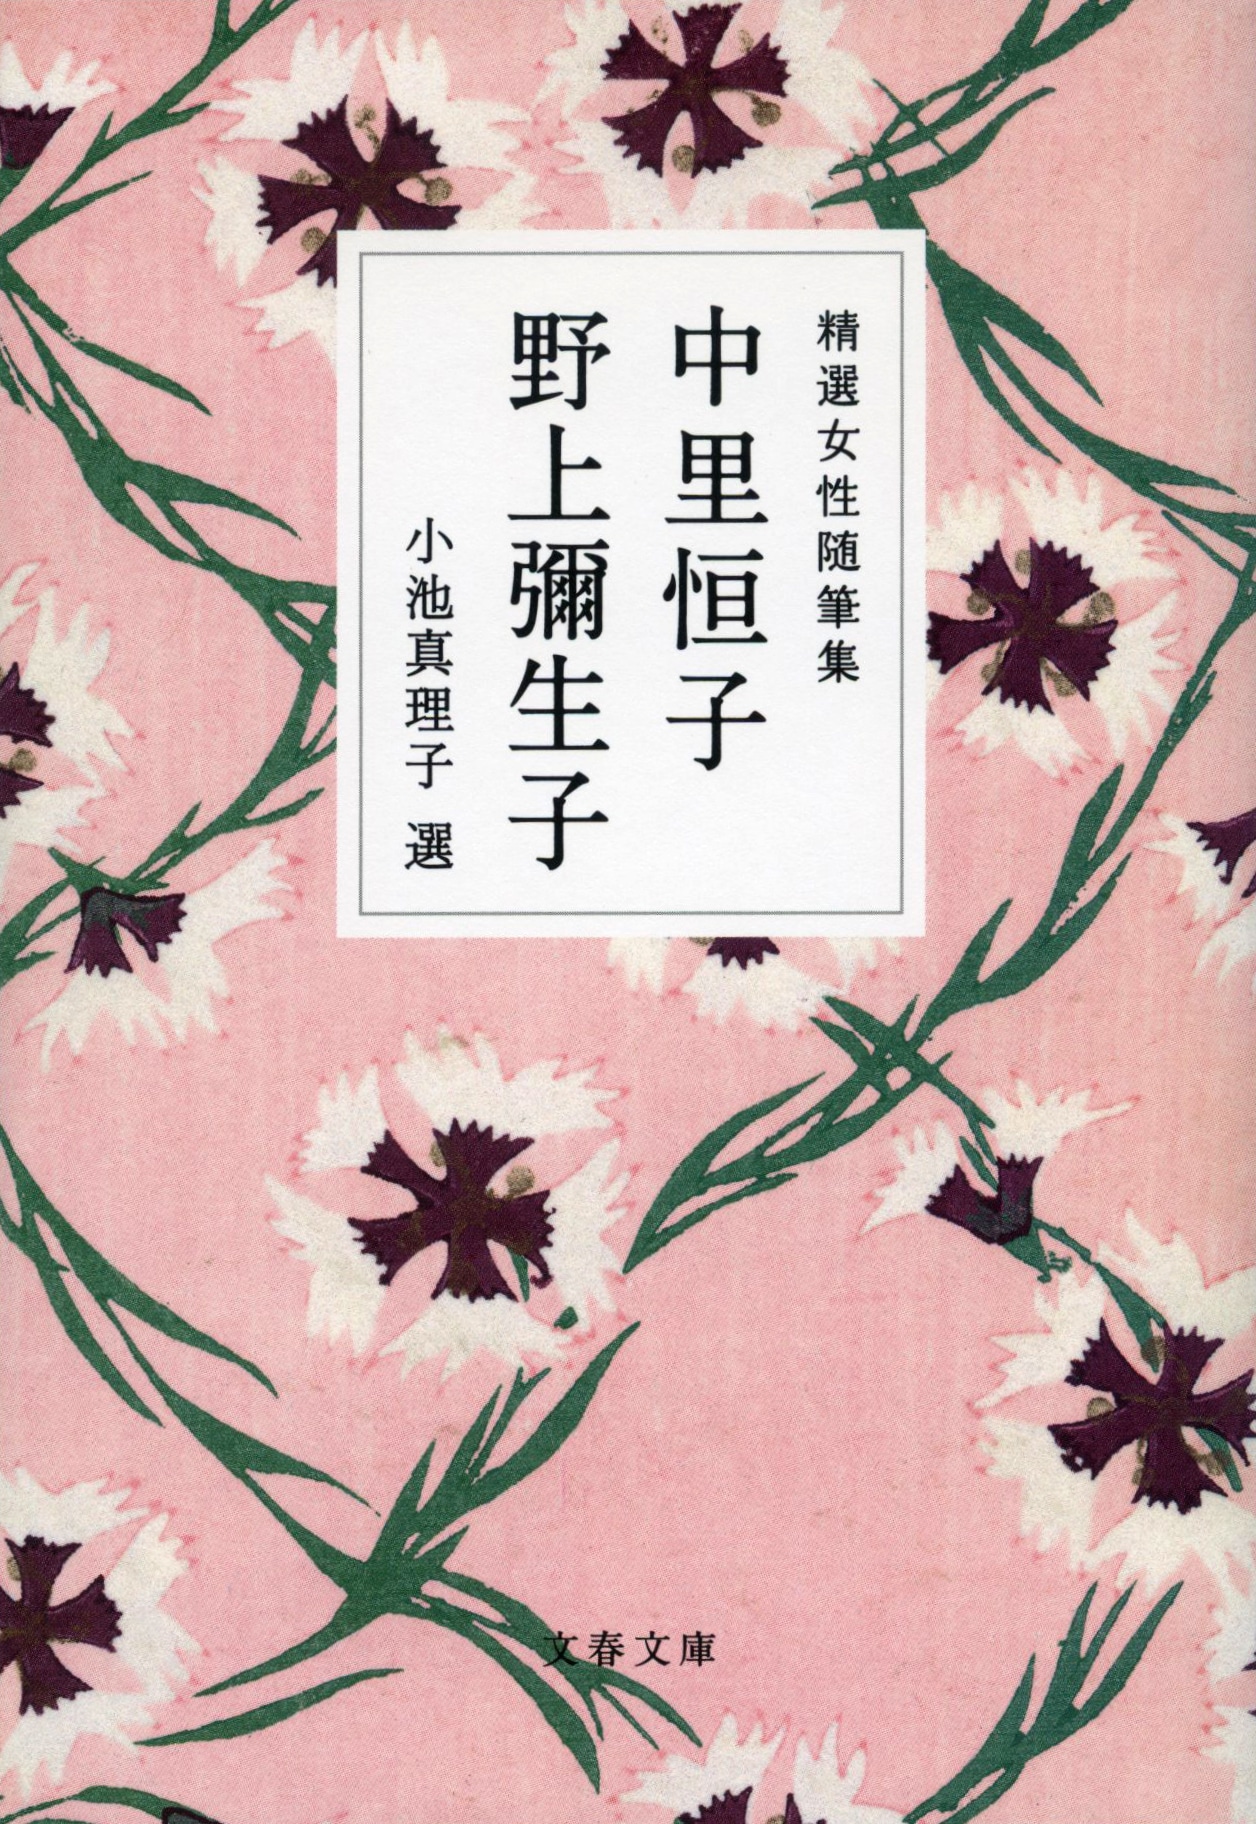 漱石を師と仰ぎ、約100年もの年月をかけて自らの文学を完成させた長寿作家